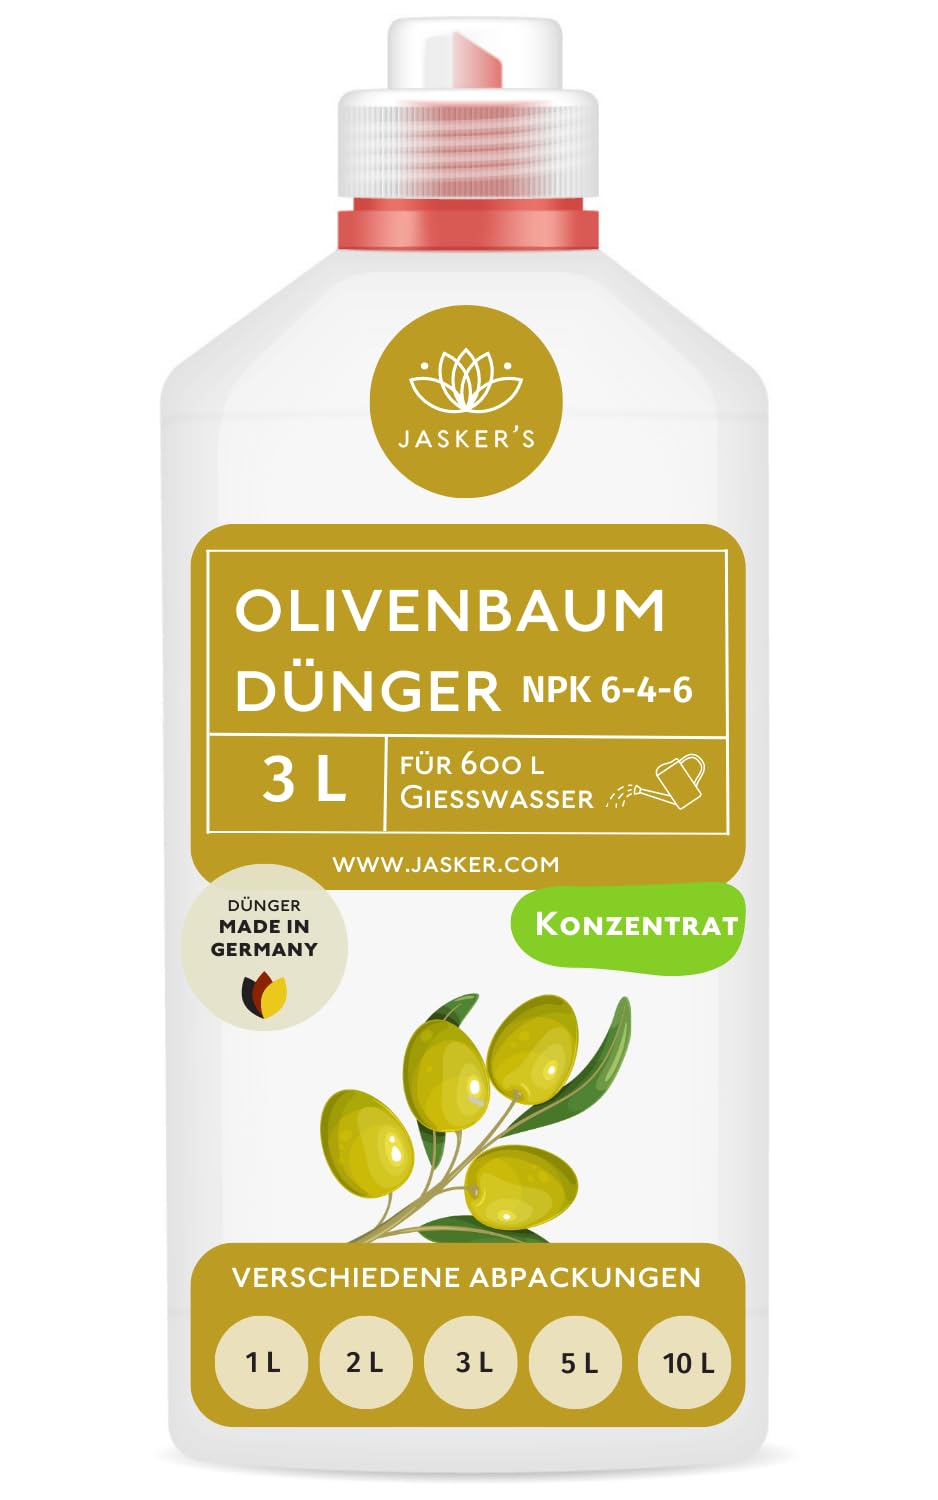 Bio Olivenbaum Dünger flüssig 3 Liter Konzentrat für 600 Liter Gießwasser - 100% organischer Dünger für Olivenbaum - Mediterraner Pflanzendünger für Garten & Kübel - Oliven Dünger